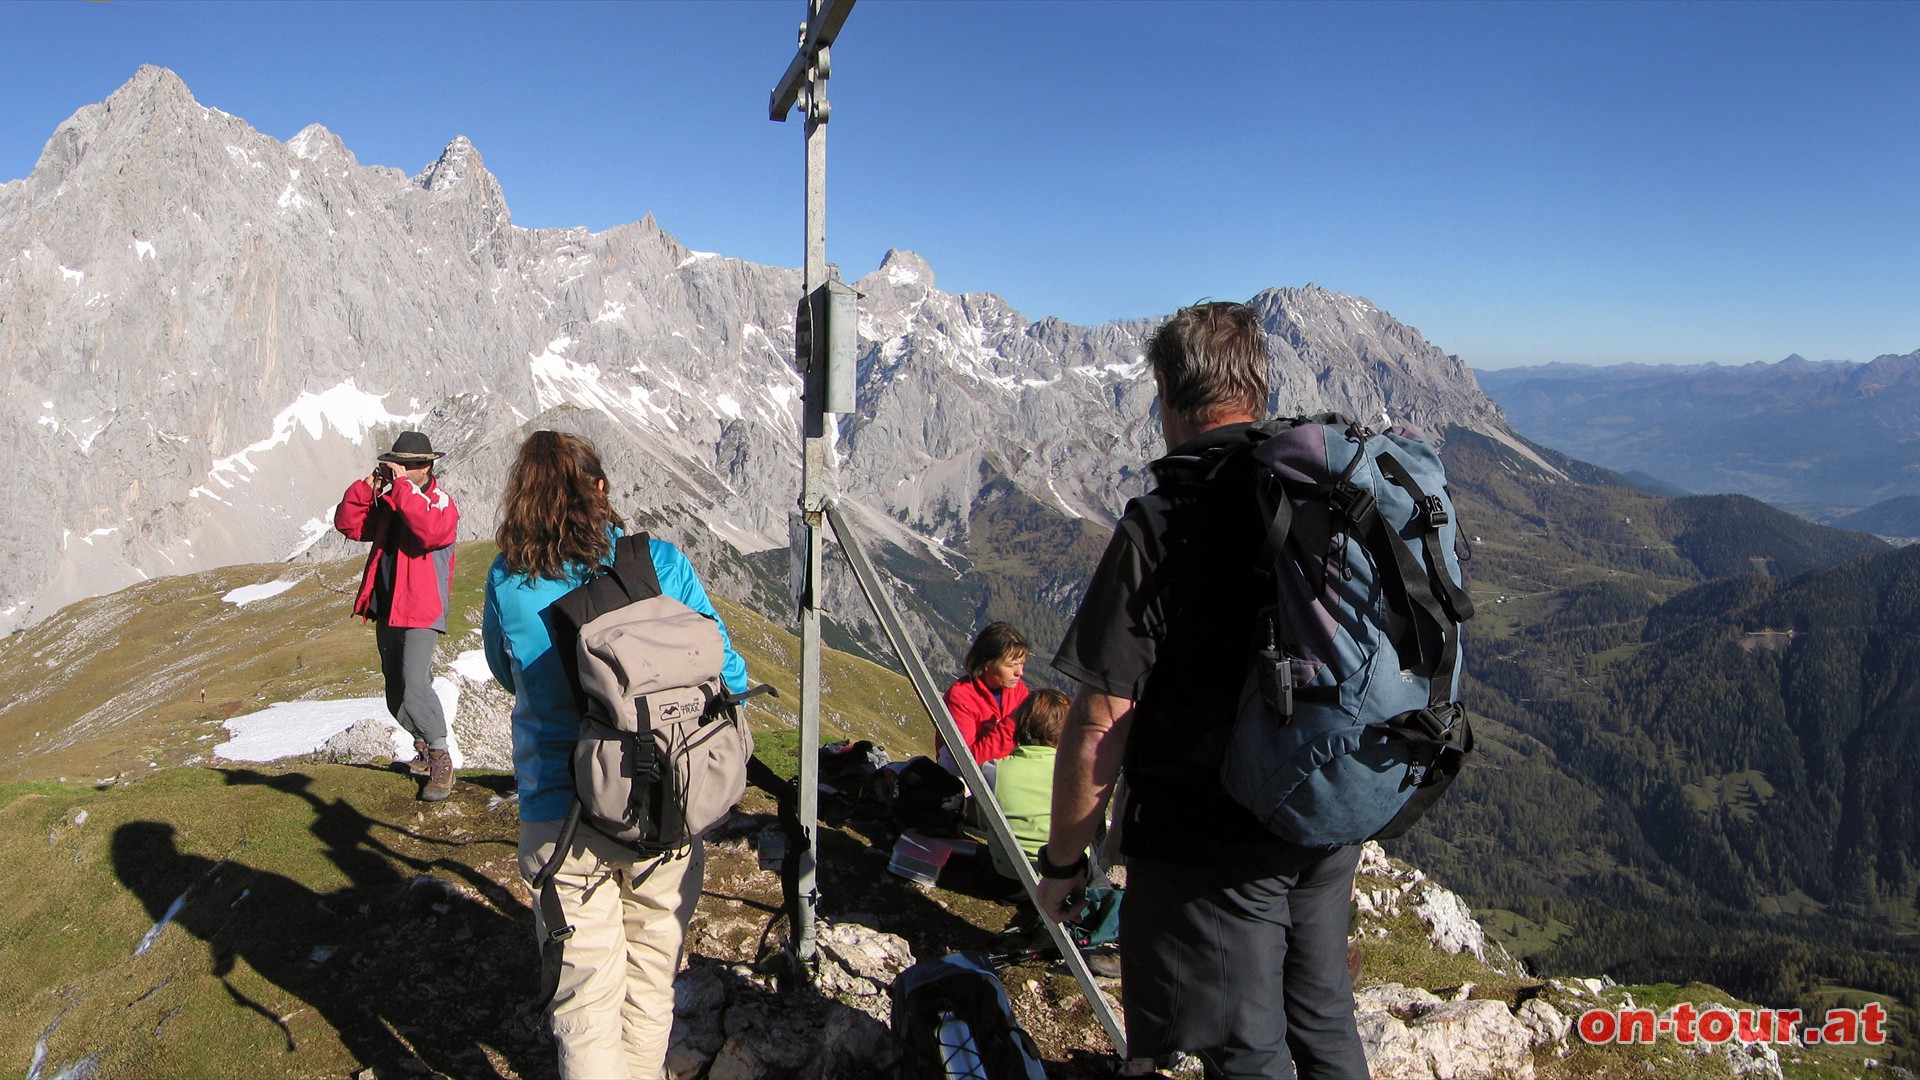 Eine herrliche Aussicht zum Dachsteinmassiv und weit in das sterreichische Alpenland erwartet den Wanderer auf dieser Tour.